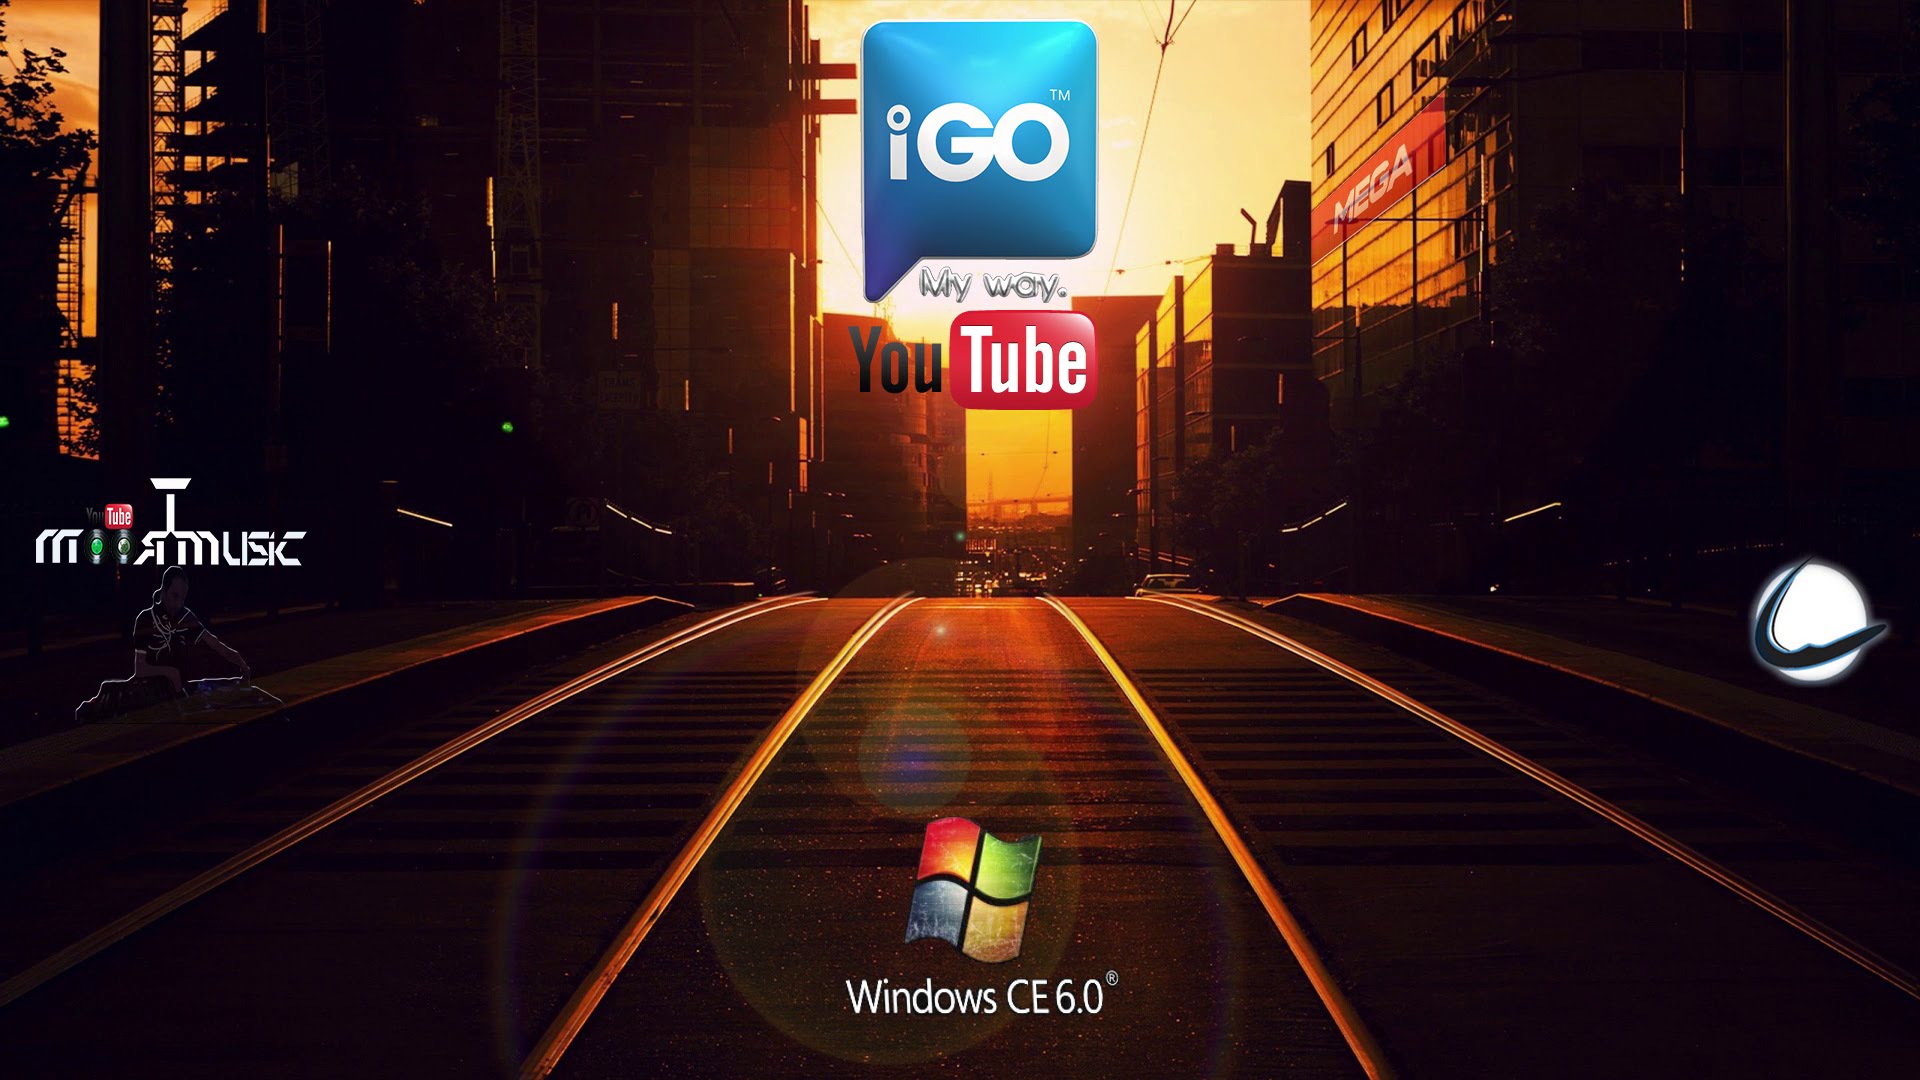 igo primo windows ce 6.0 download